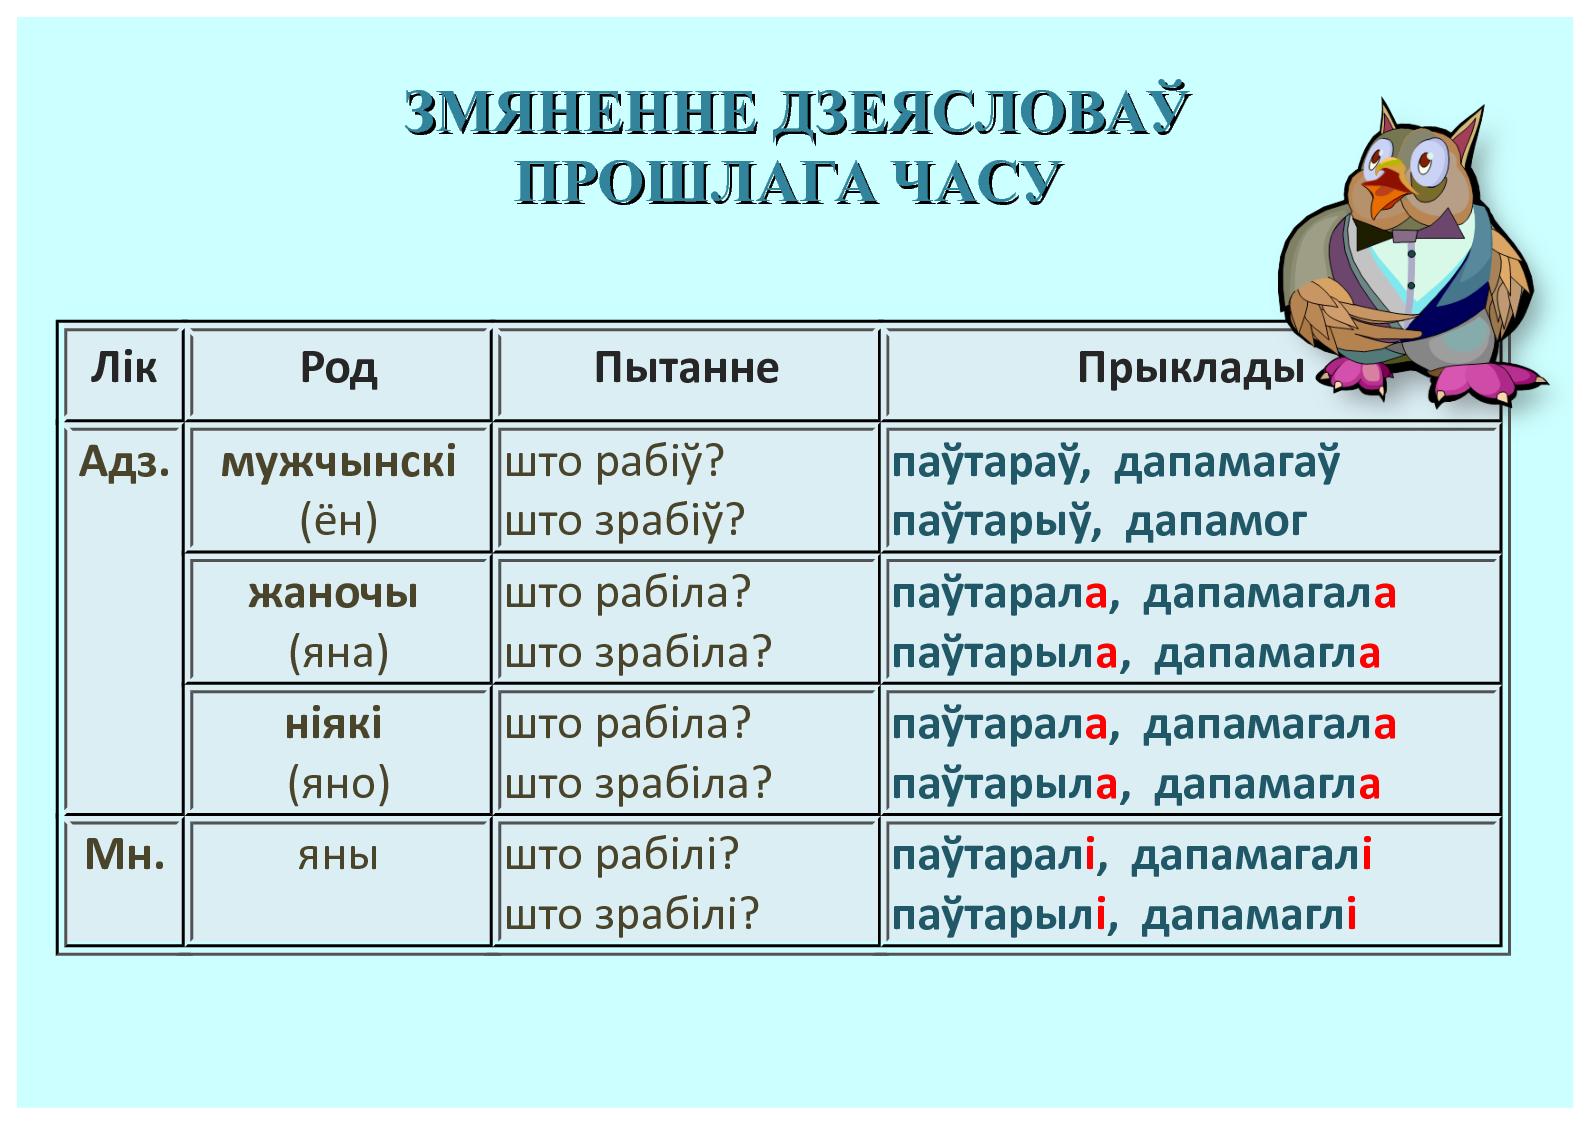 члены сказа в белорусском языке фото 48